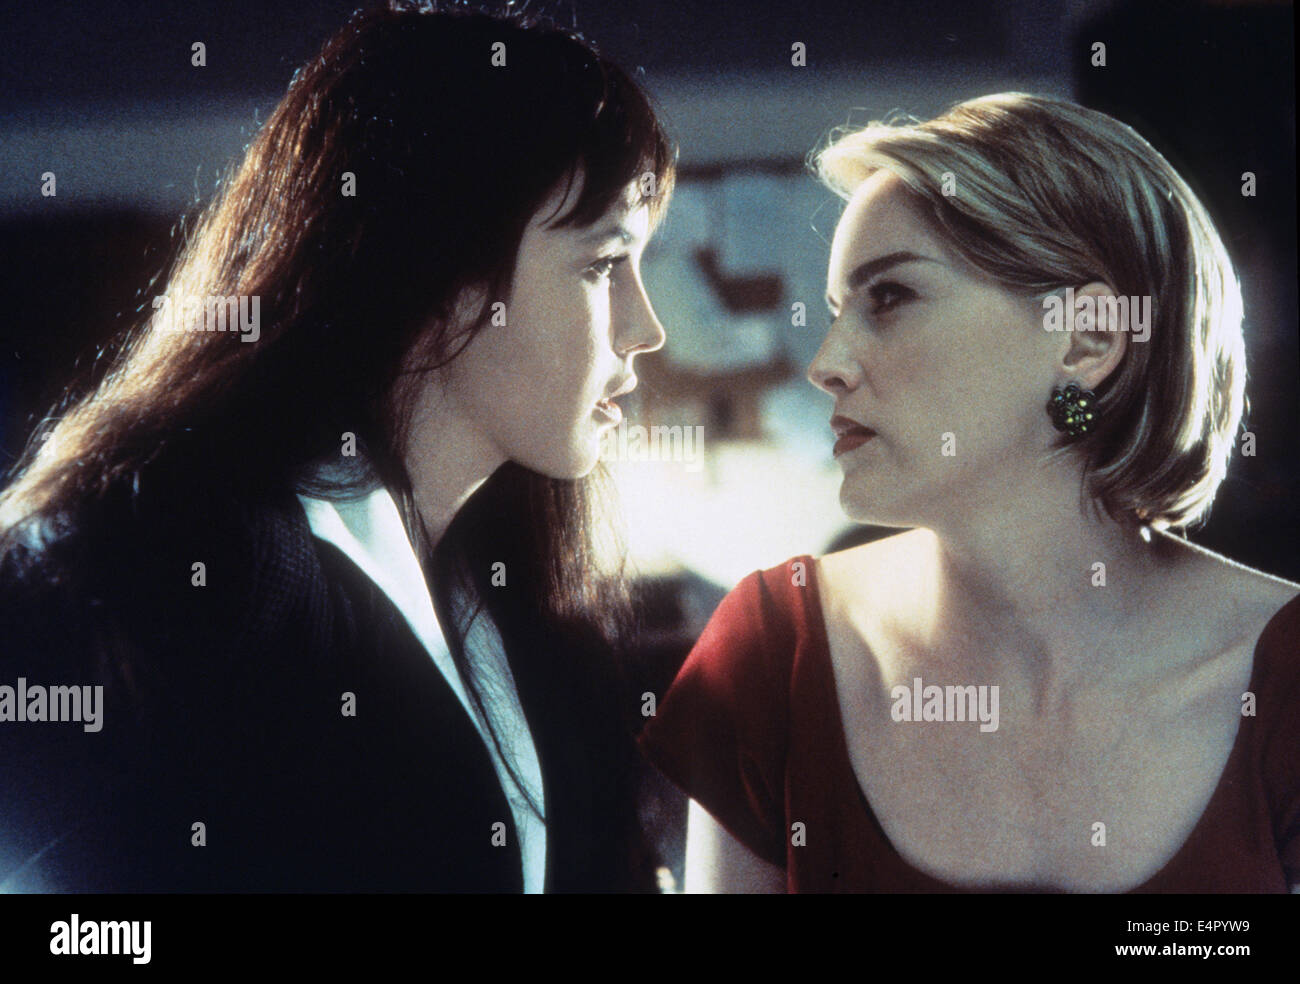 DIABOLIQUE 1996 Morgan Creek Productions film con Sharon Stone a destra e Isabelle Adjani Foto Stock